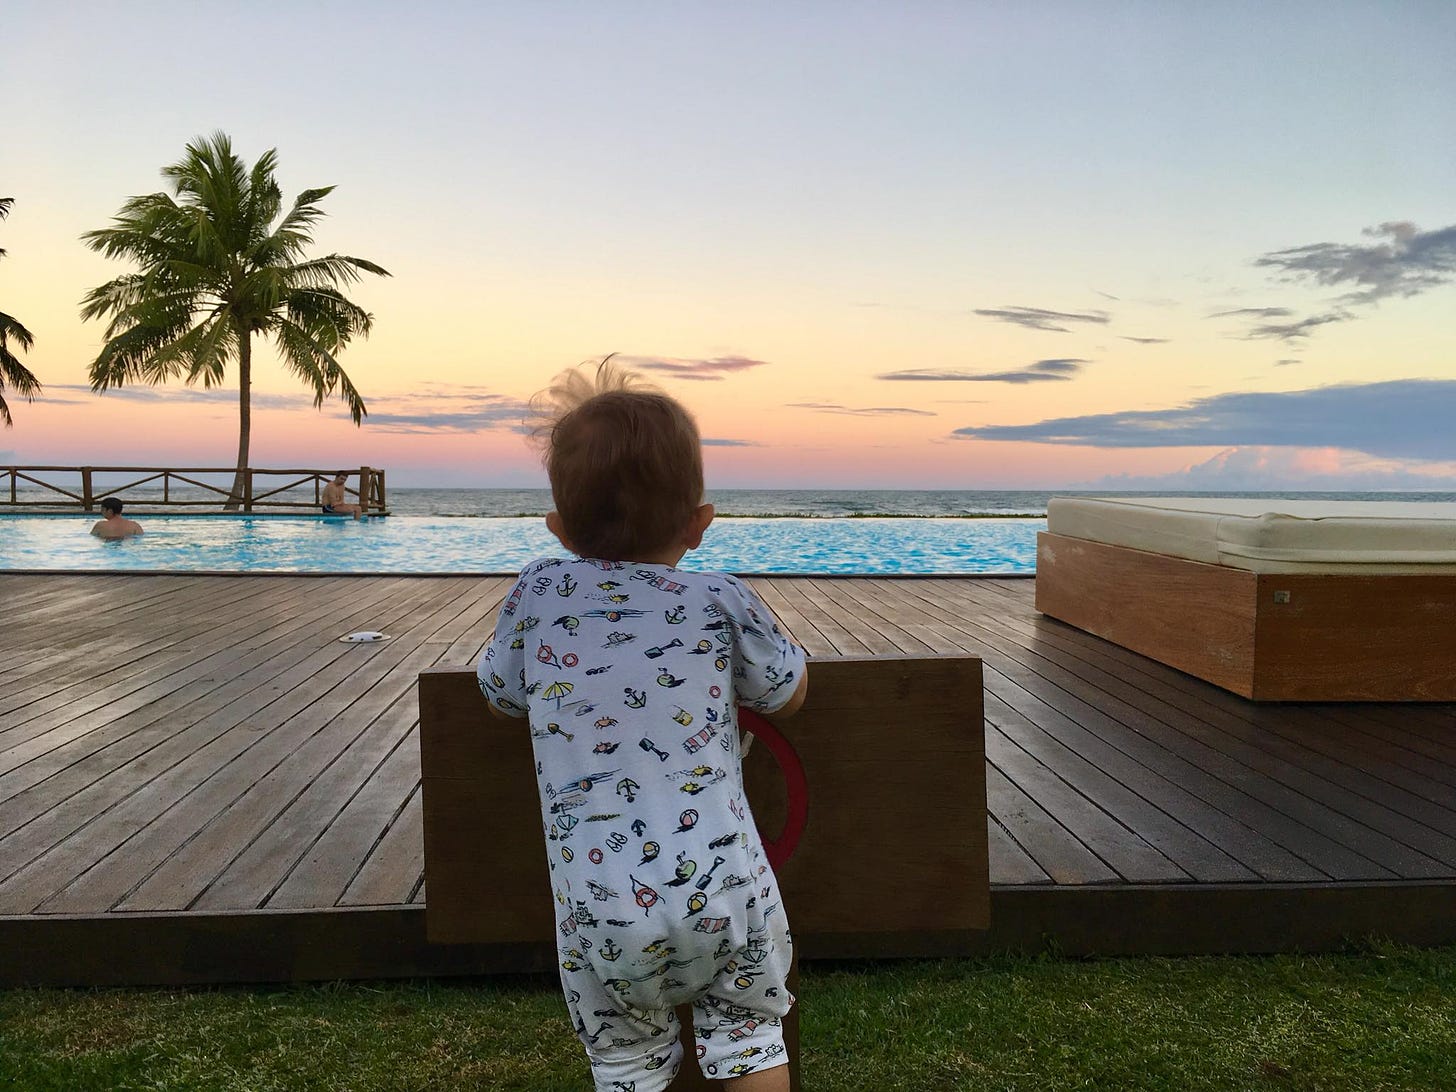 foto do domenico, de costas, apoiado em um deck de madeira, olhando em direção ao mar com um belo céu de fim de tarde na bahia